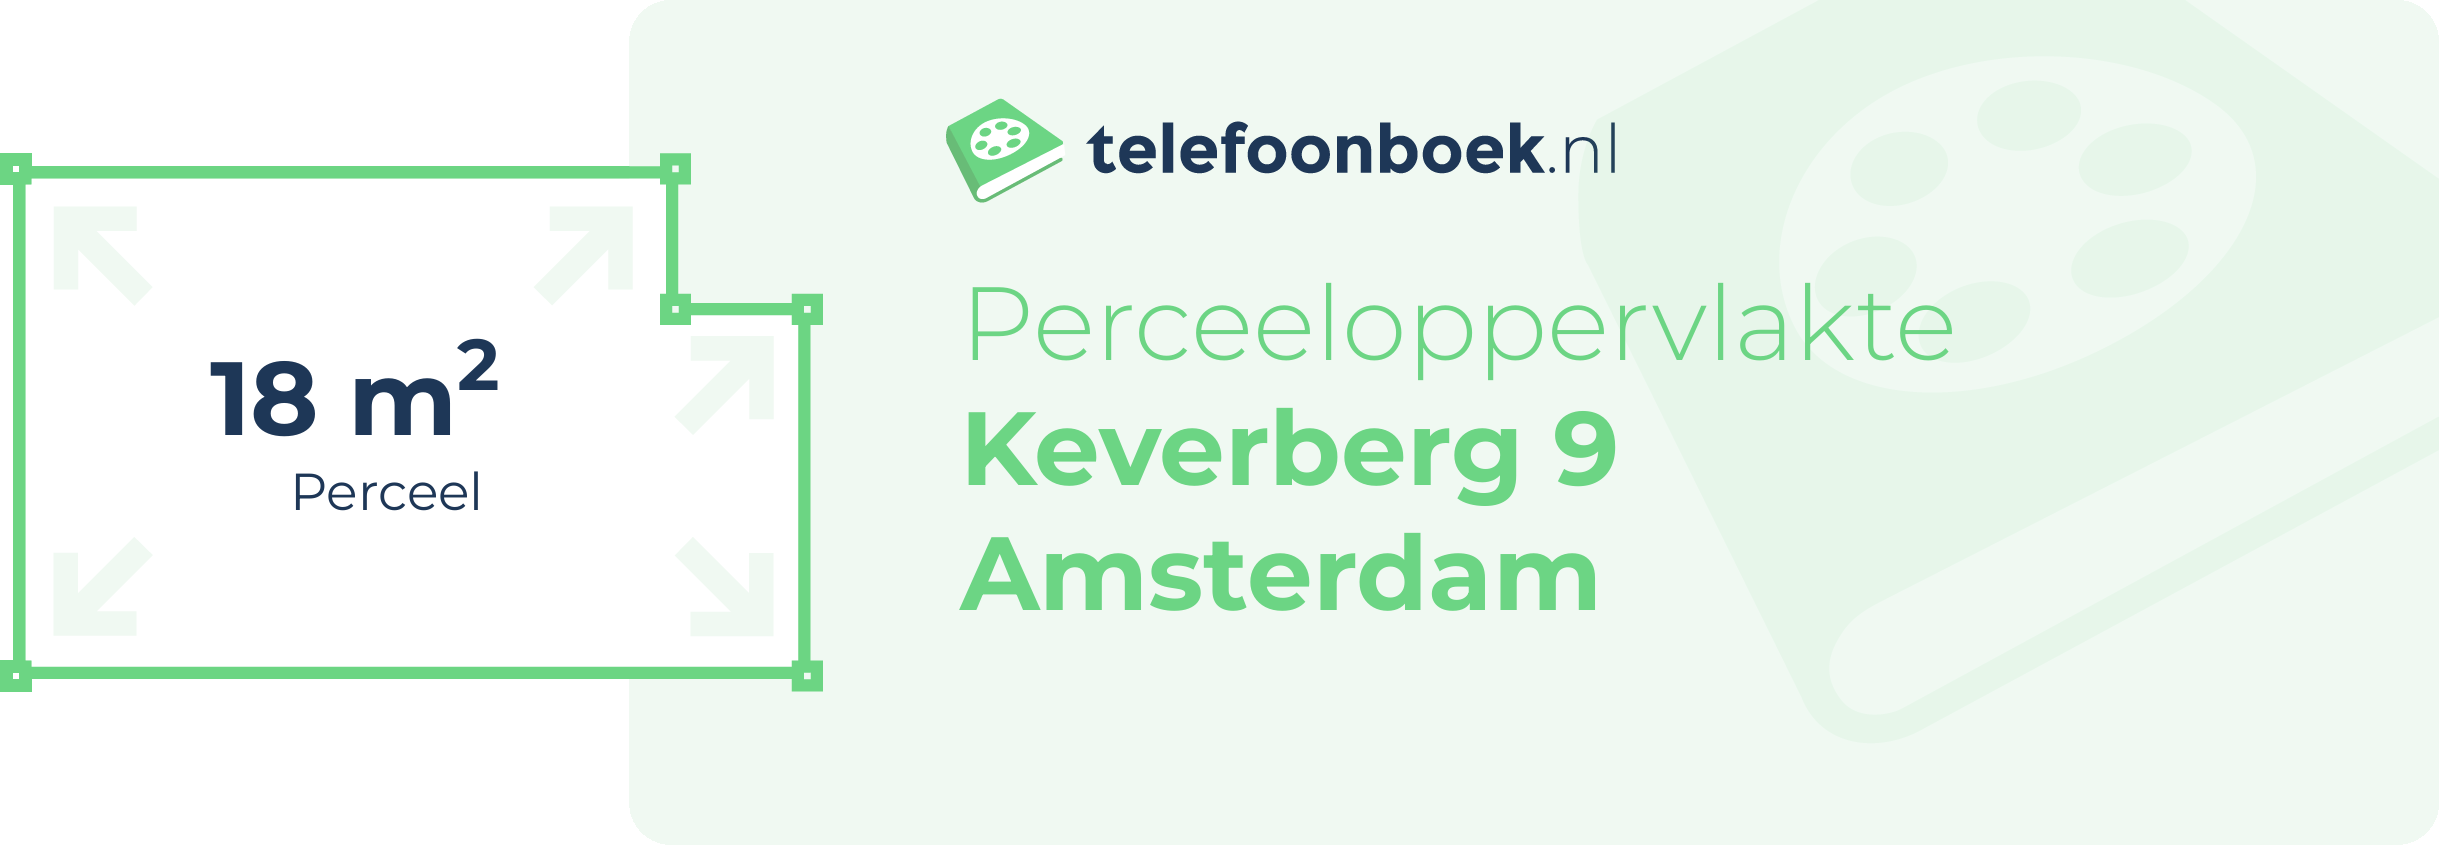 Perceeloppervlakte Keverberg 9 Amsterdam